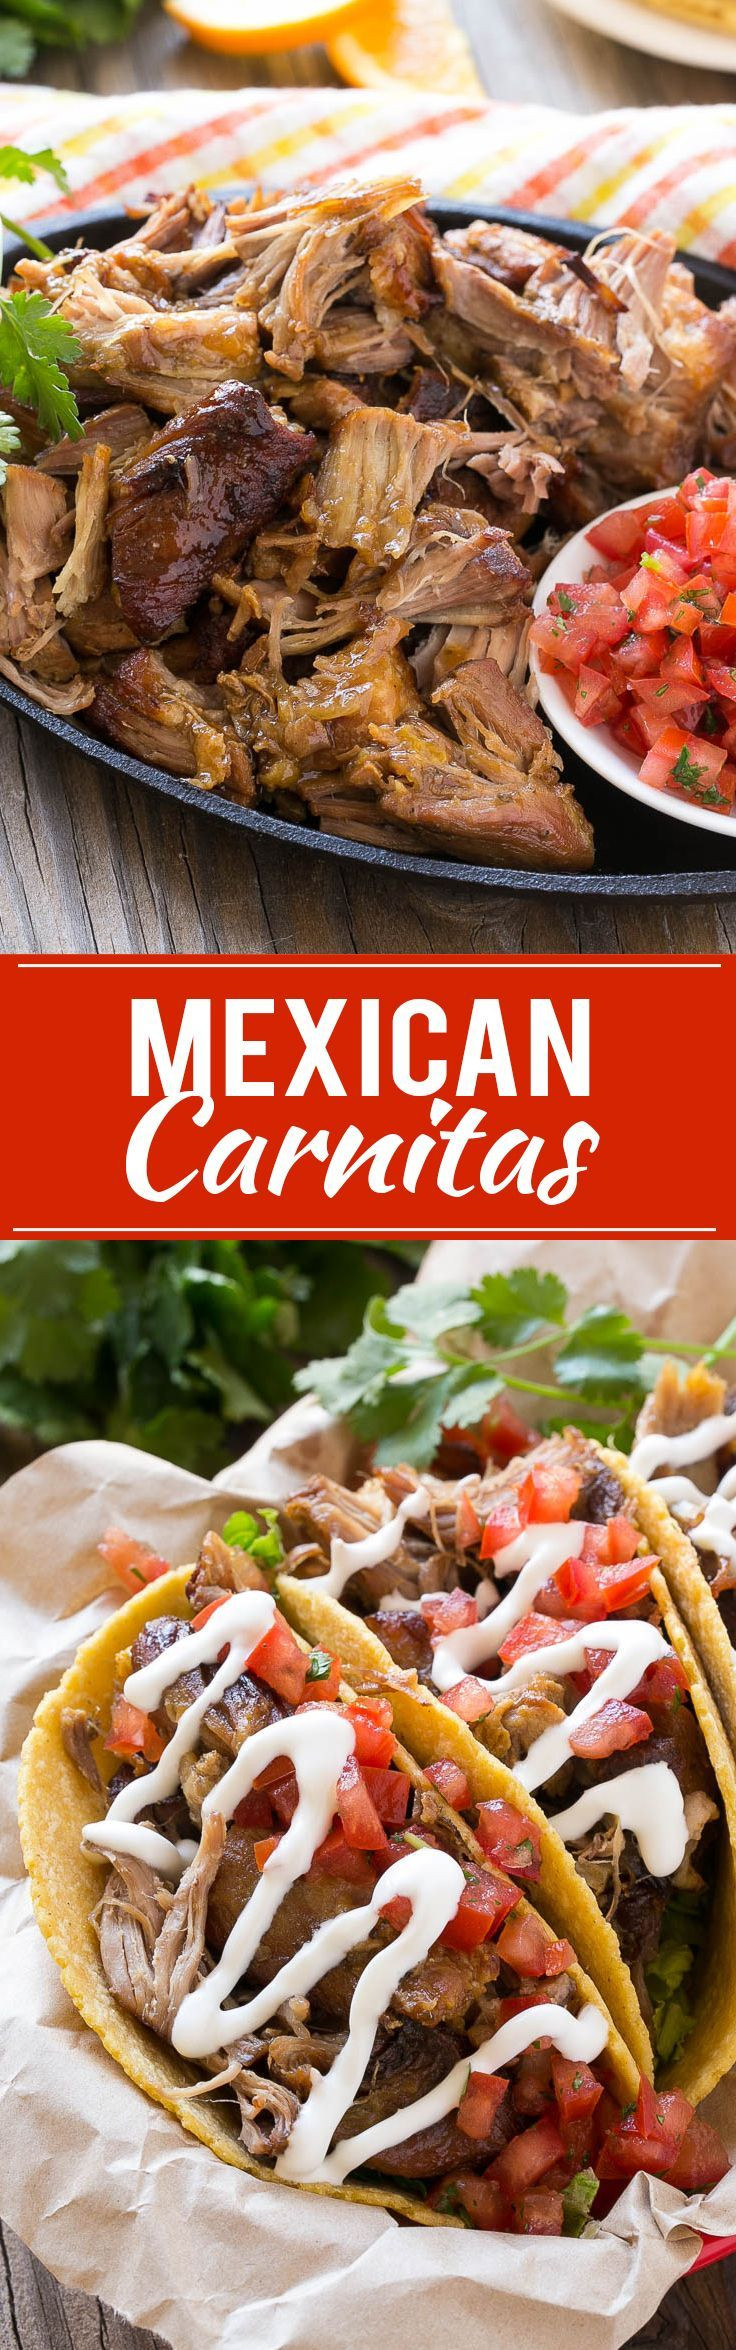 Mexican Pork Carnitas Recipes
 Pork Carnitas Mexican Pulled Pork Recipe